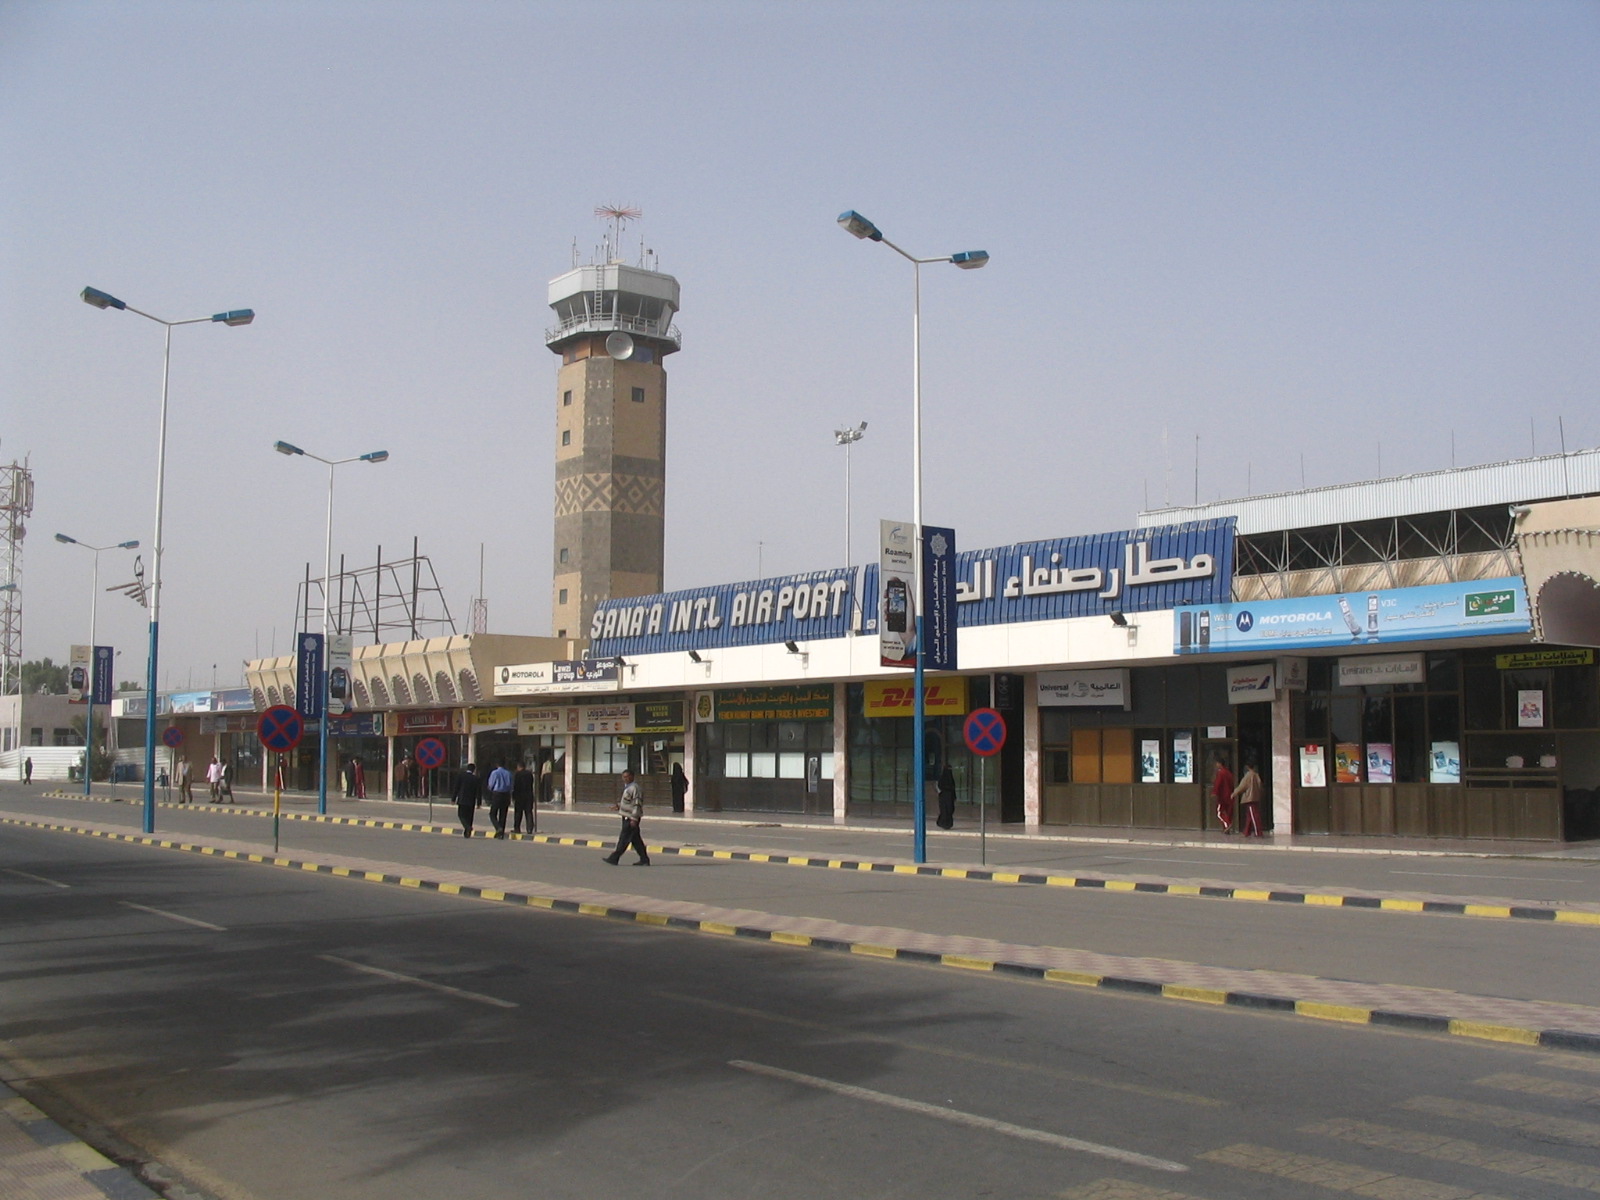   إغلاق مطار صنعاء الدولي بعد استهداف قاعدة الديلمي  وأنباء عن تدمير طائرات عسكرية